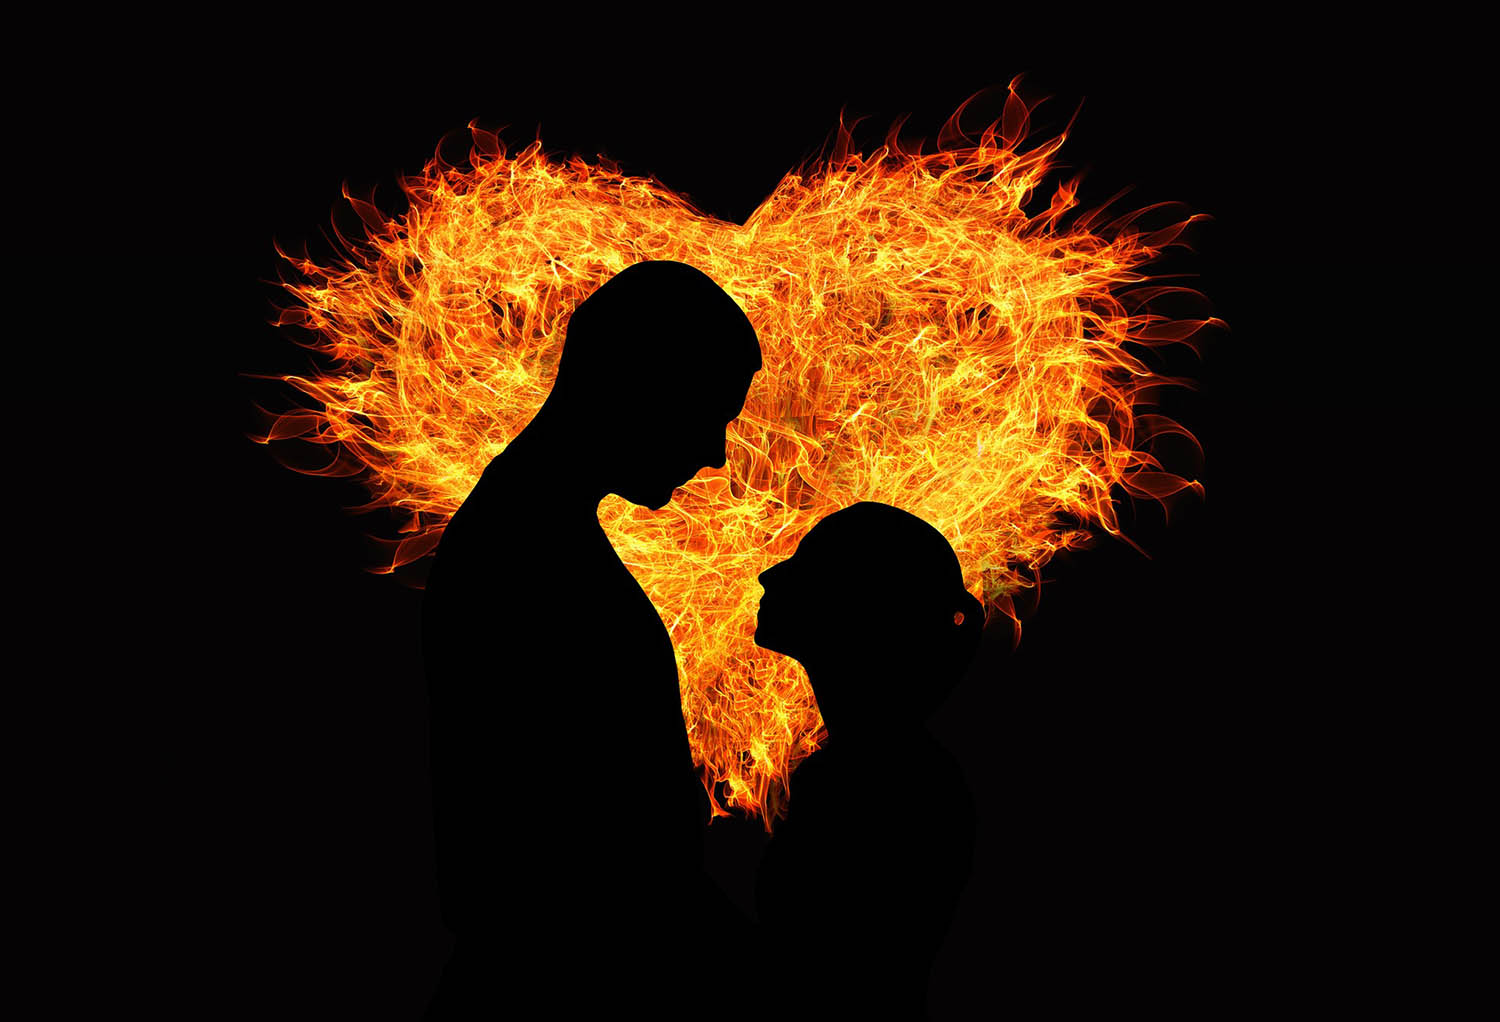 Les flammes jumelles : comment expliquer leur relation amoureuse ?